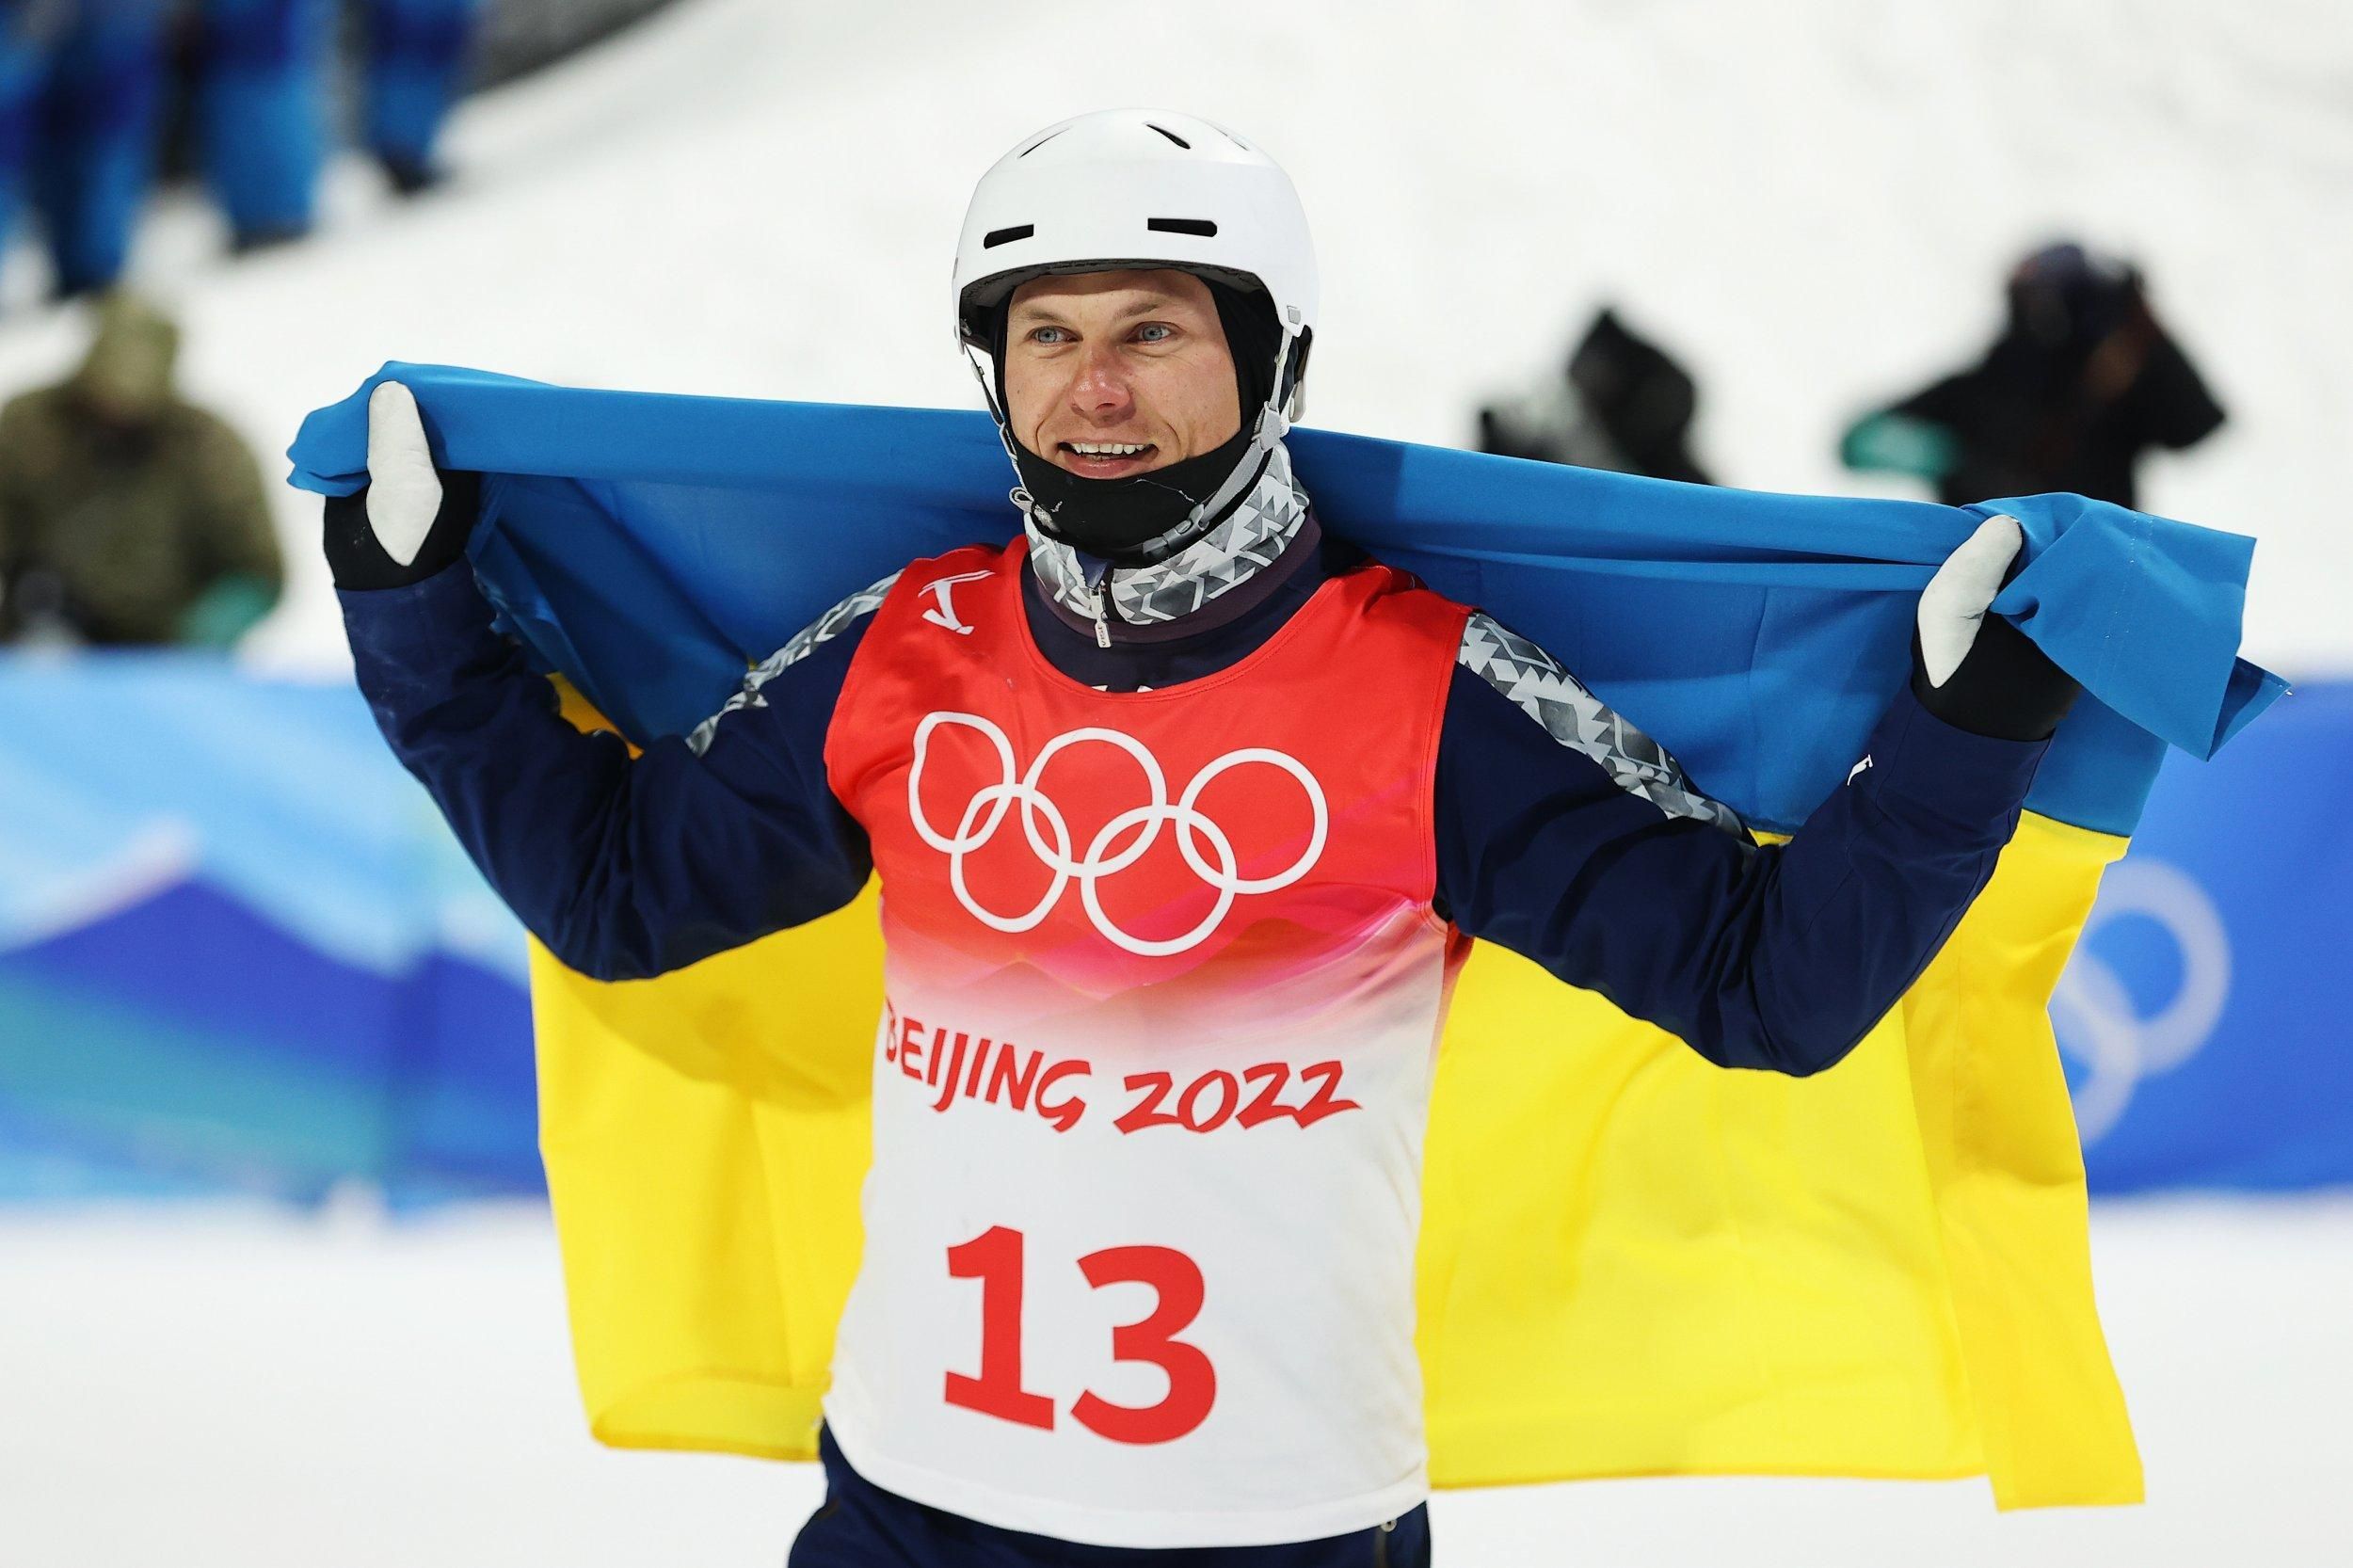 Никого не обнимал на этот раз, – Абраменко о фото с россиянином Буровым на Олимпиаде